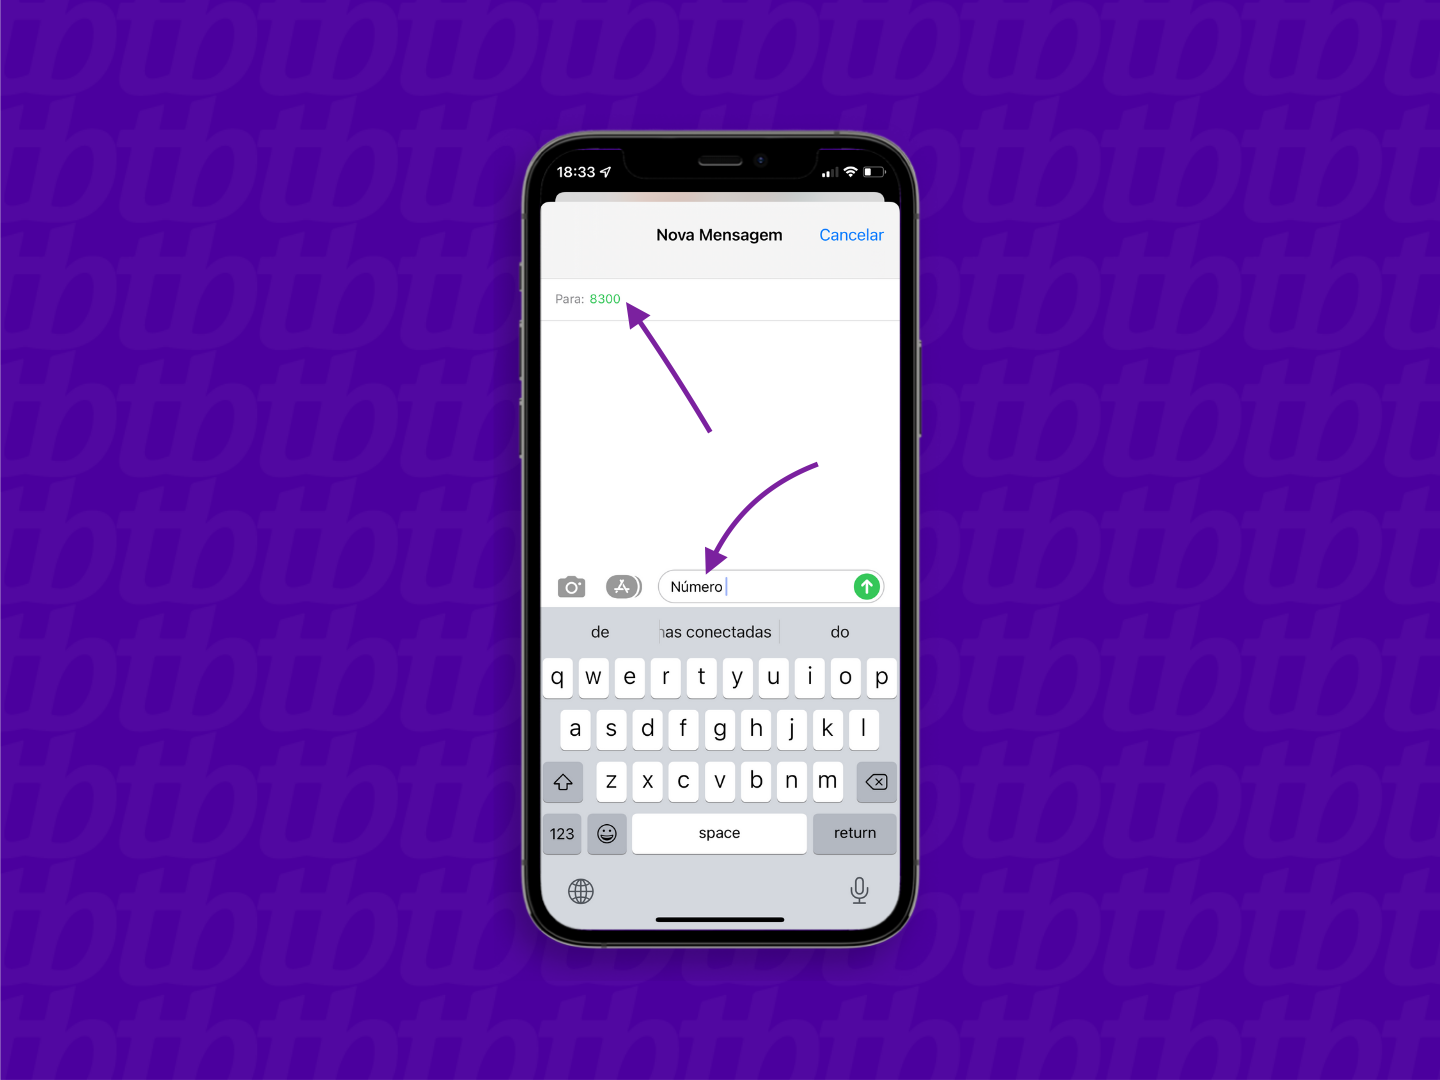 Conversa no aplicativo Mensagens do iPhone com mensagem para descobrir o número da vivo